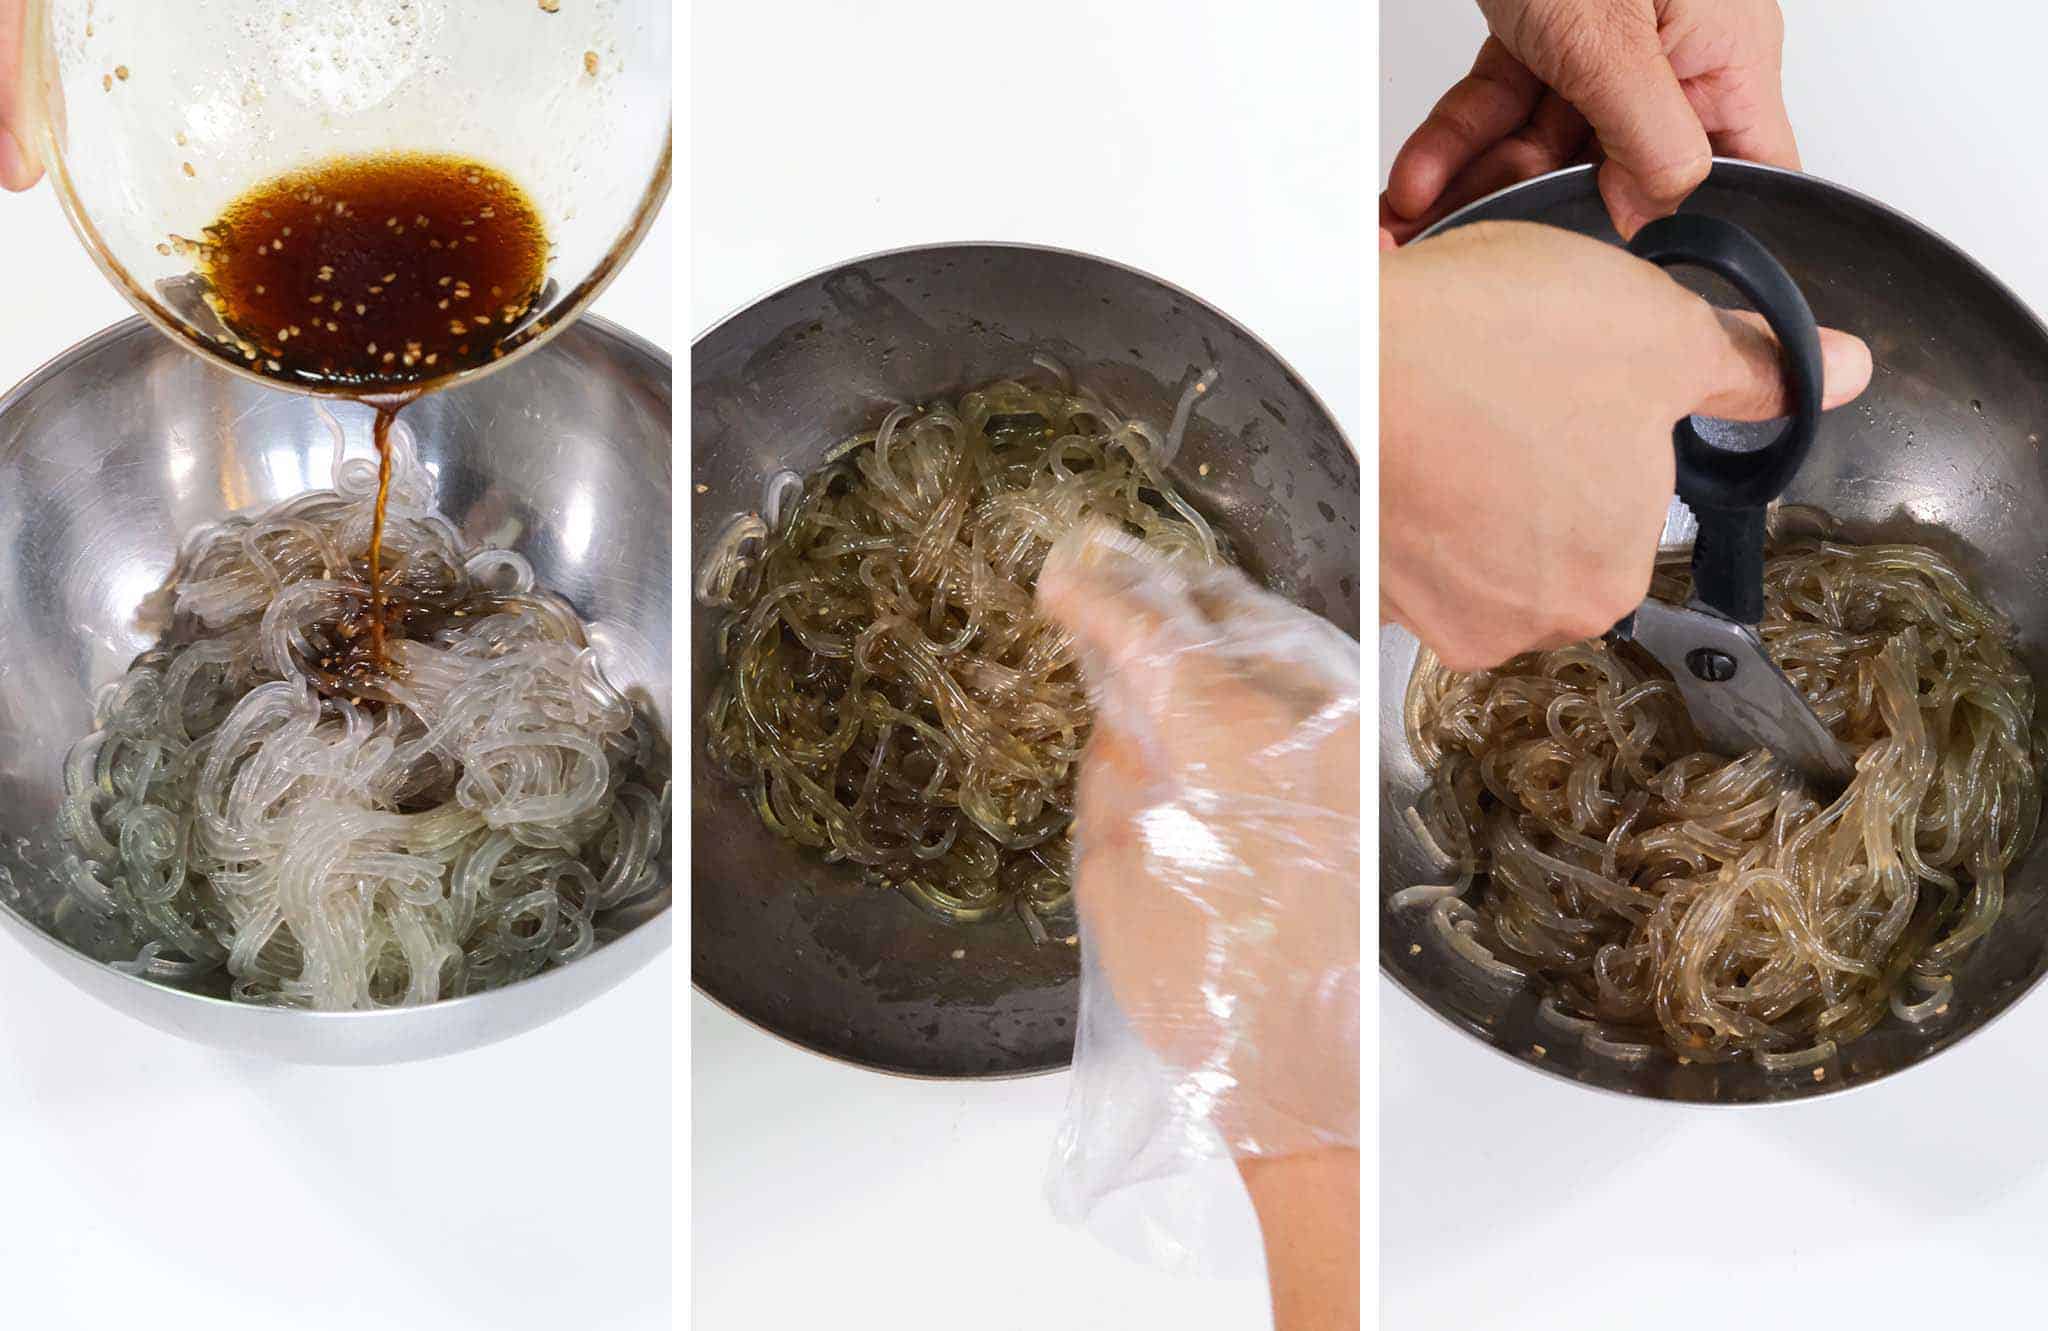 Pour the Japchae sauce onto the noodles.